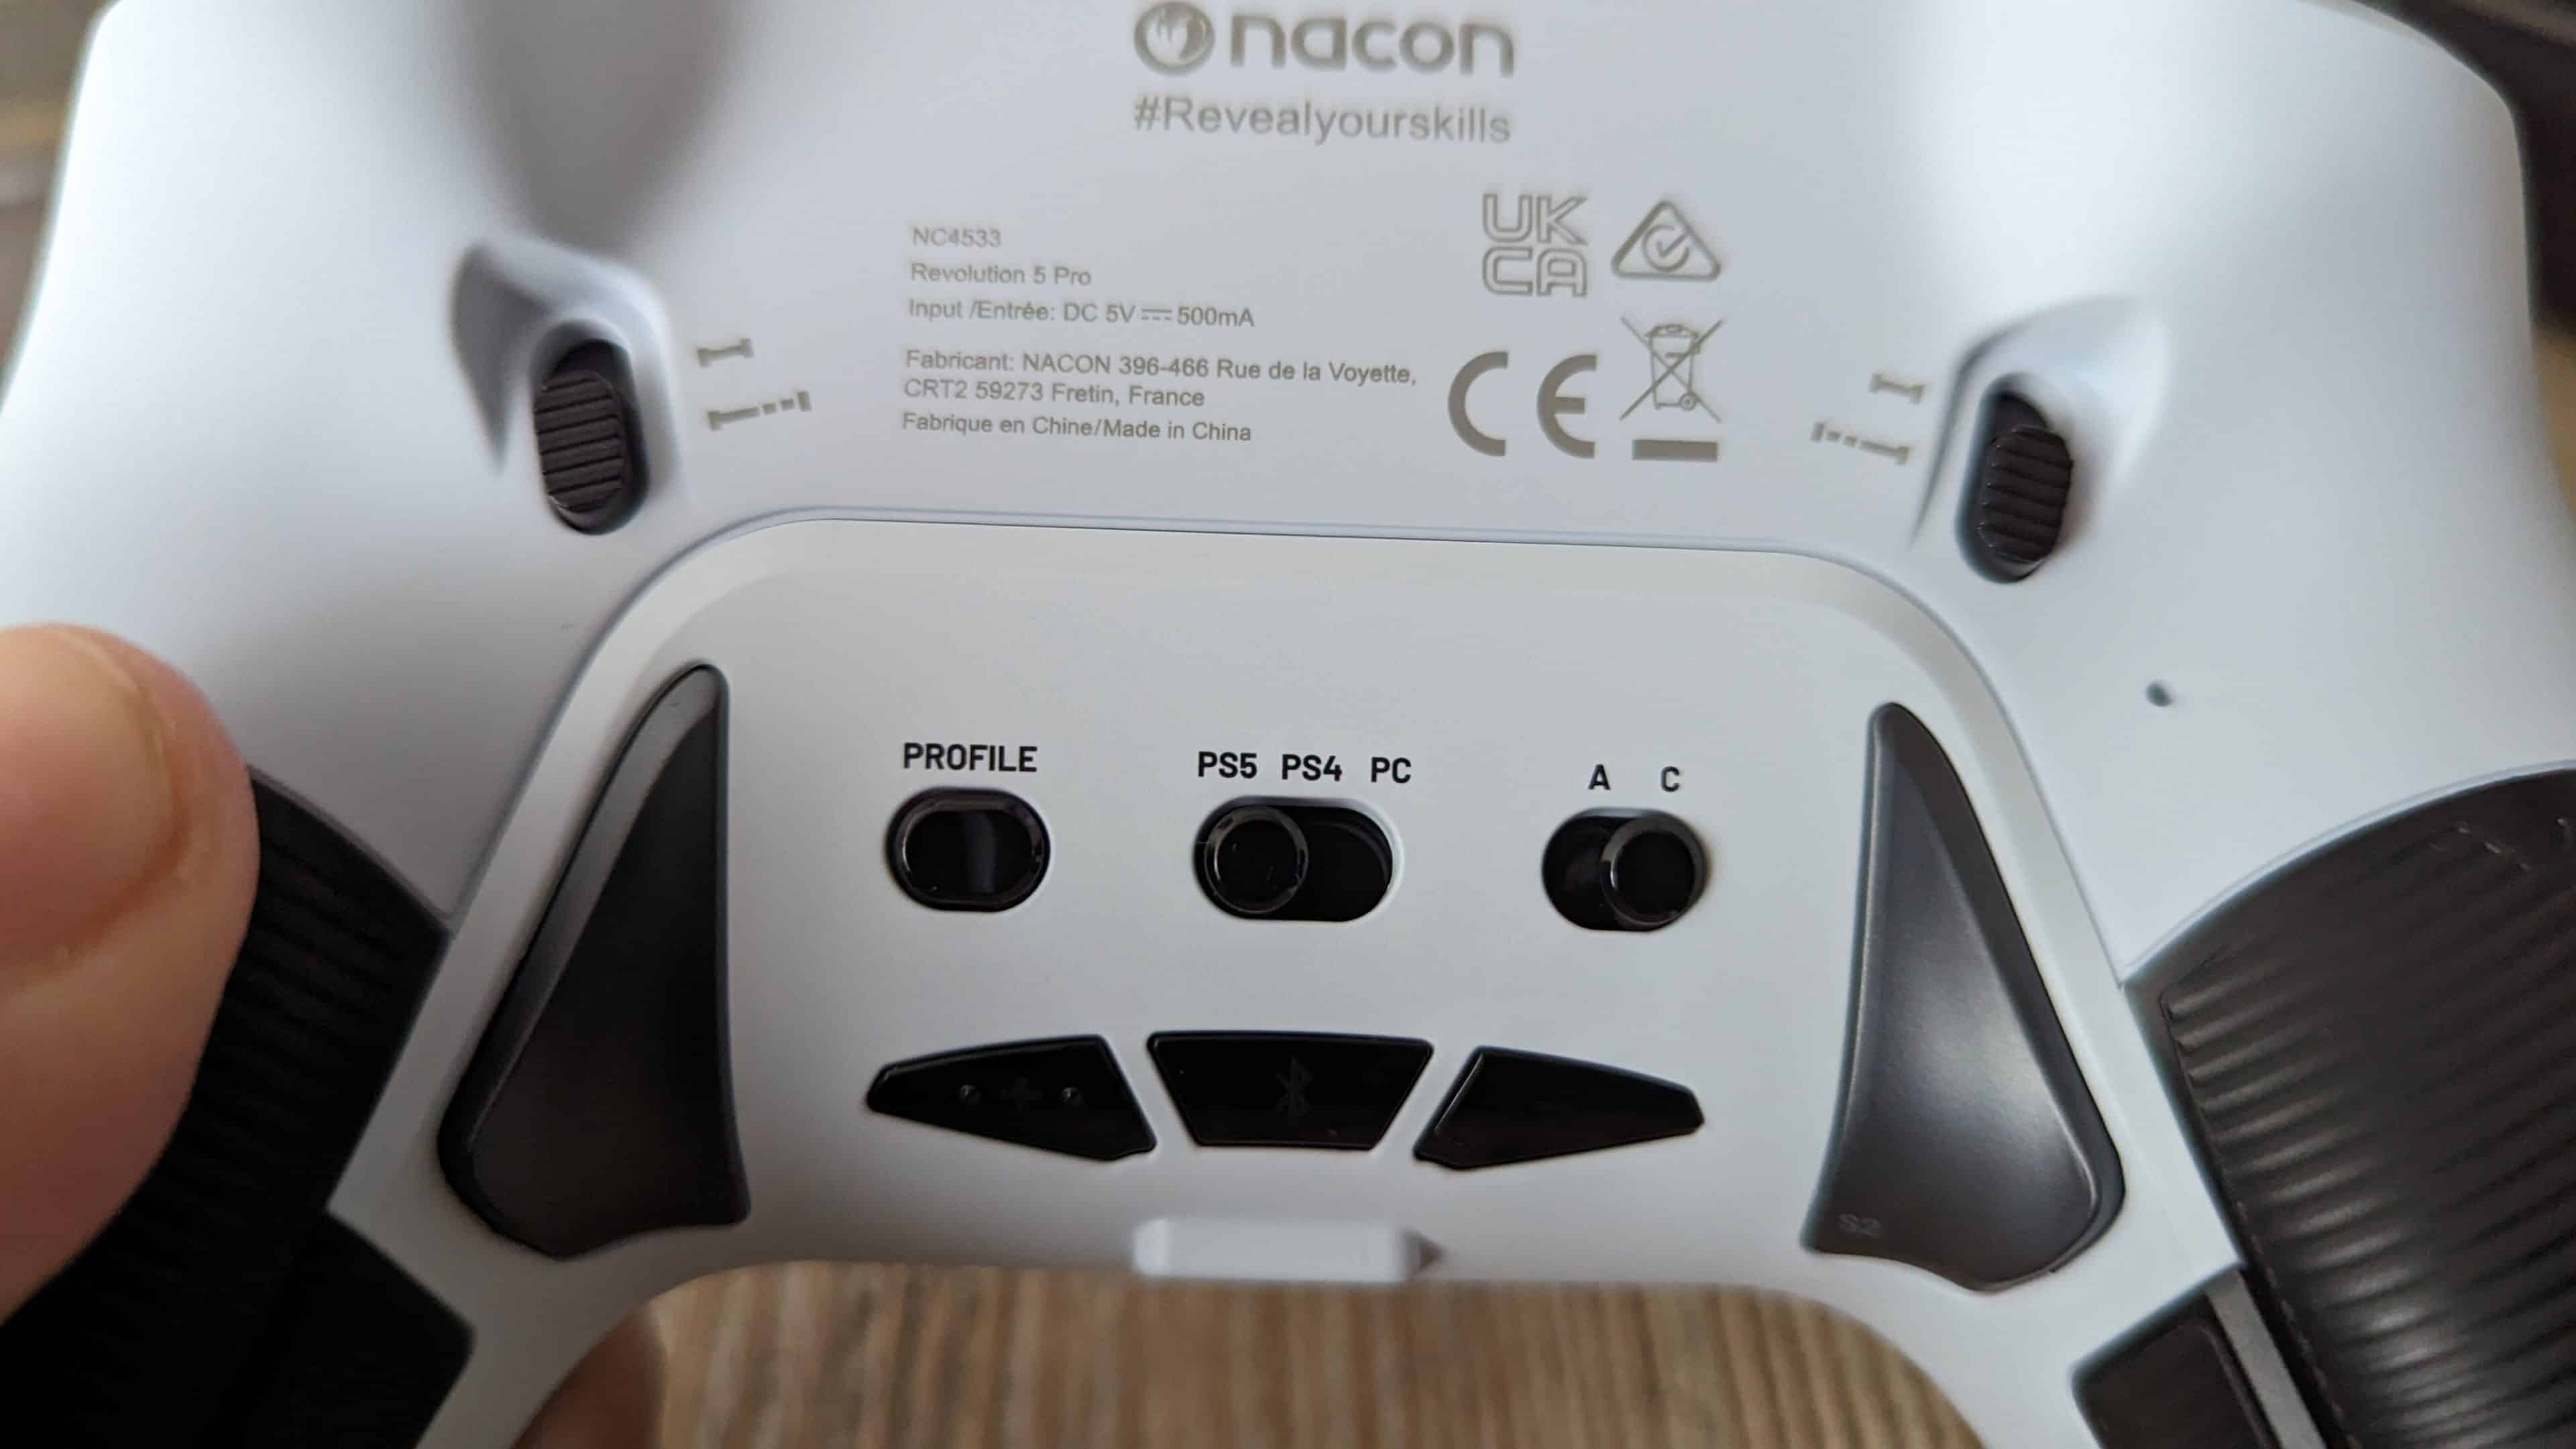 Nouvelle Manette PS5 : TEST COMPLET de la Nacon Revolution 5 Pro